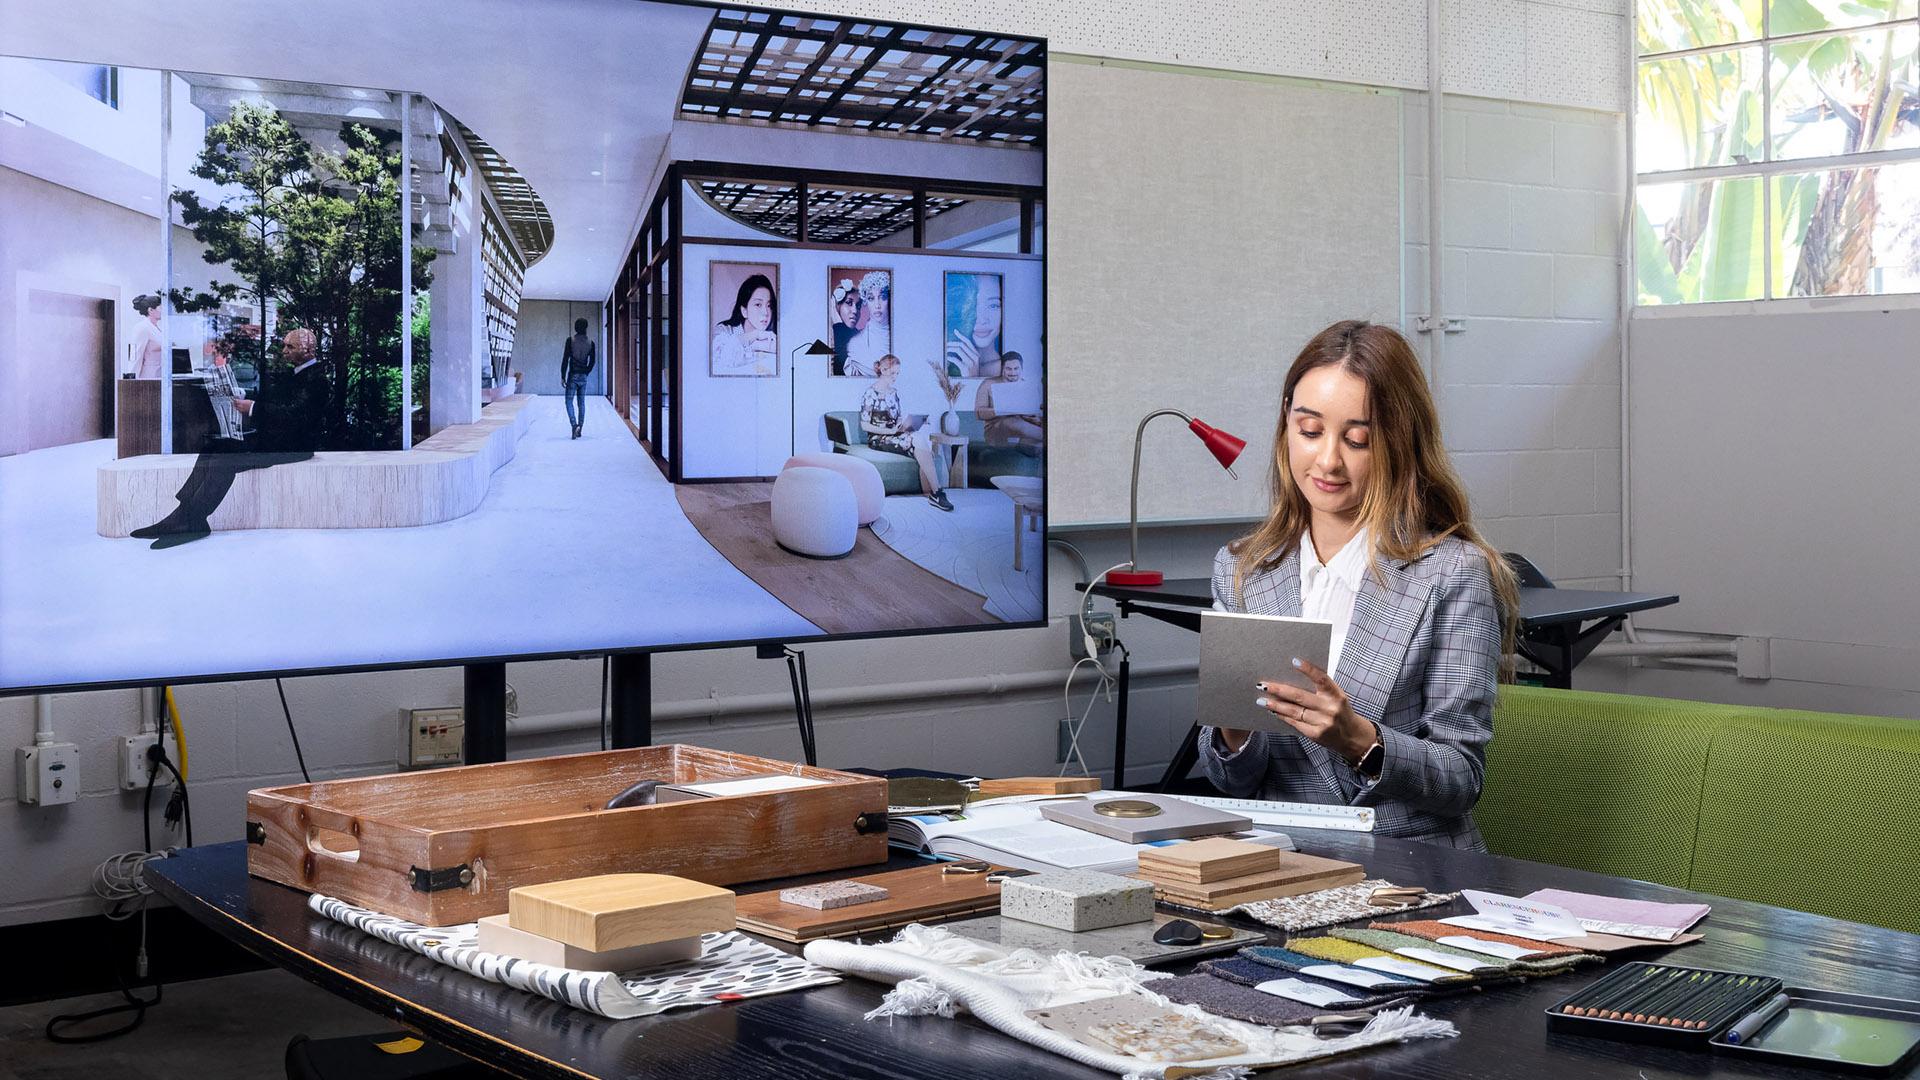 Nevi Gruskin checks her design work near giant video screen